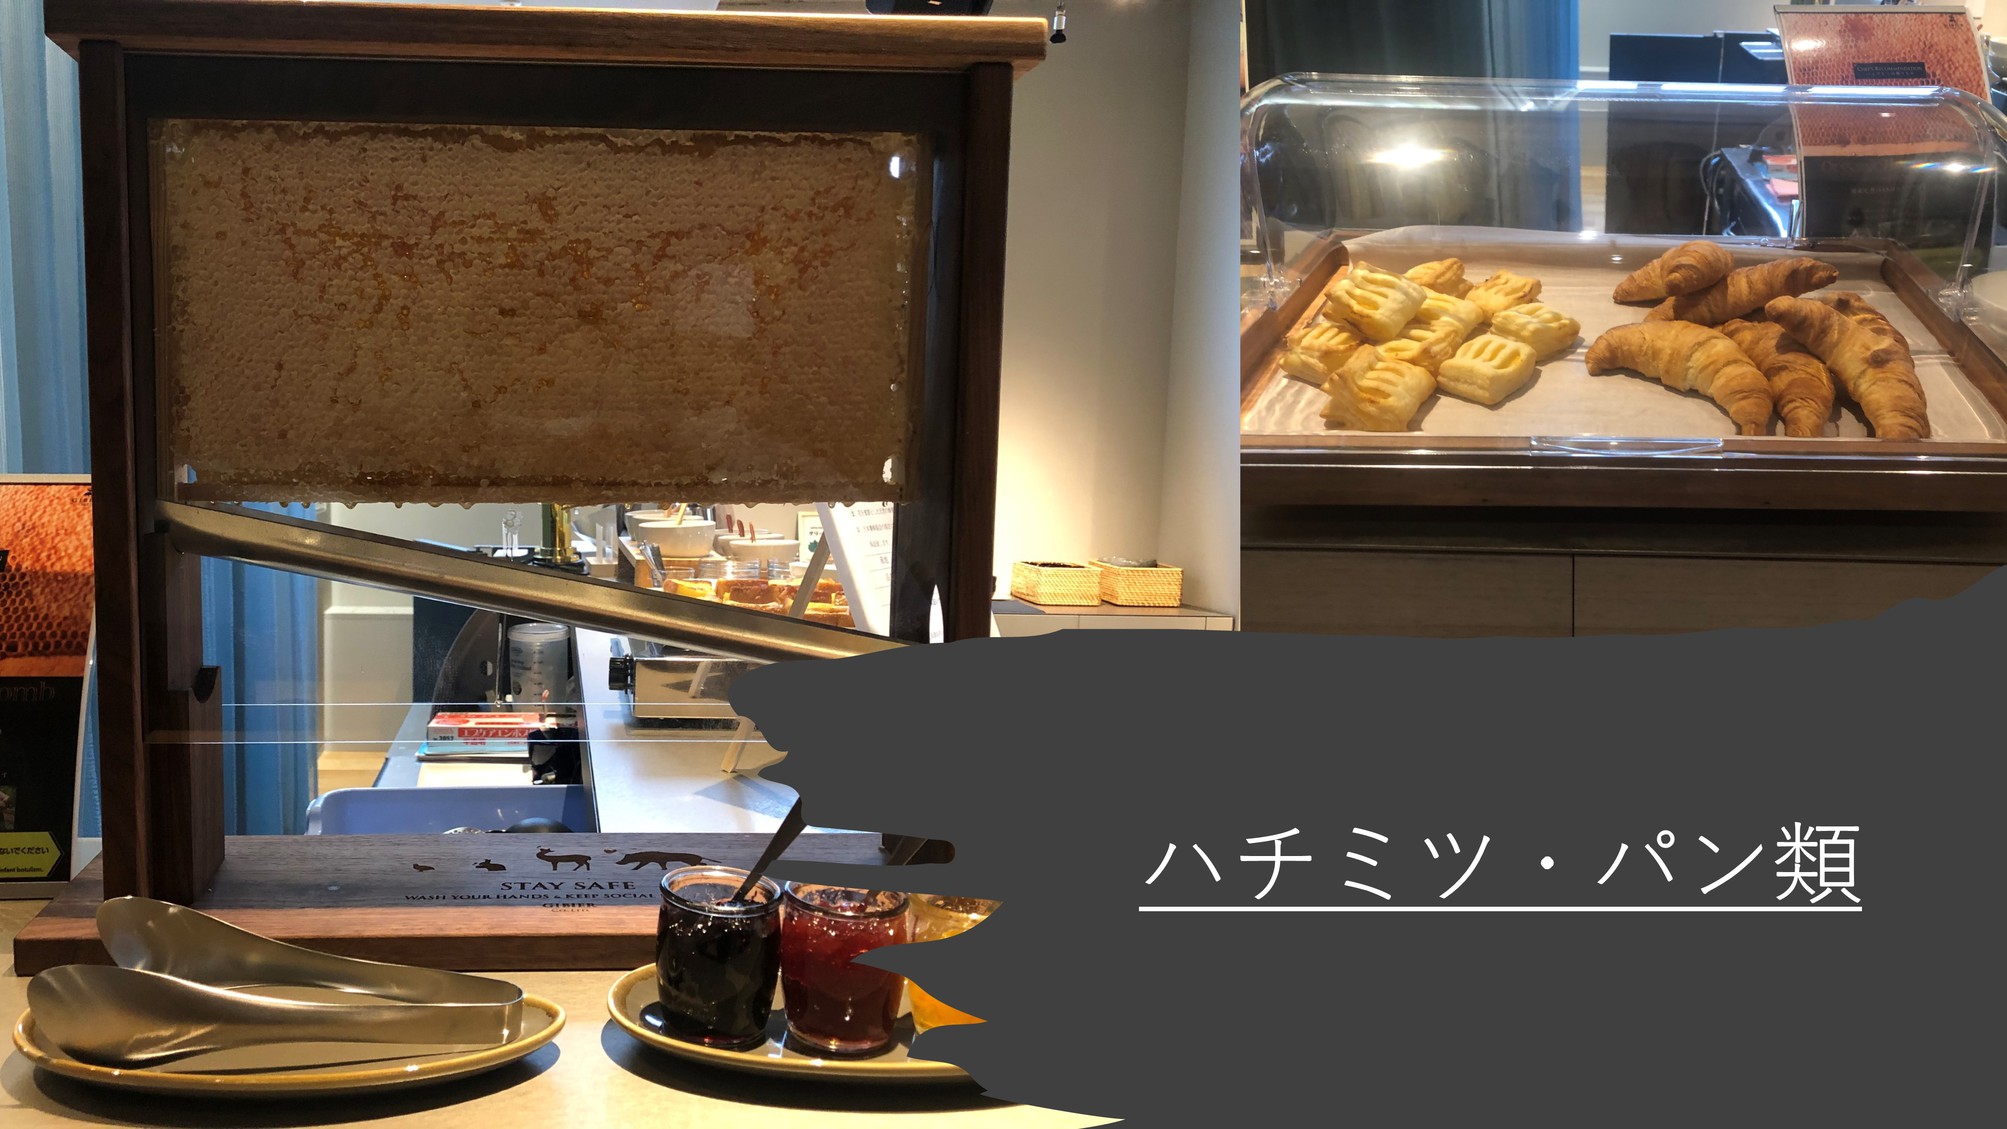 【朝食ビュッフェ】ハチミツ・パン類